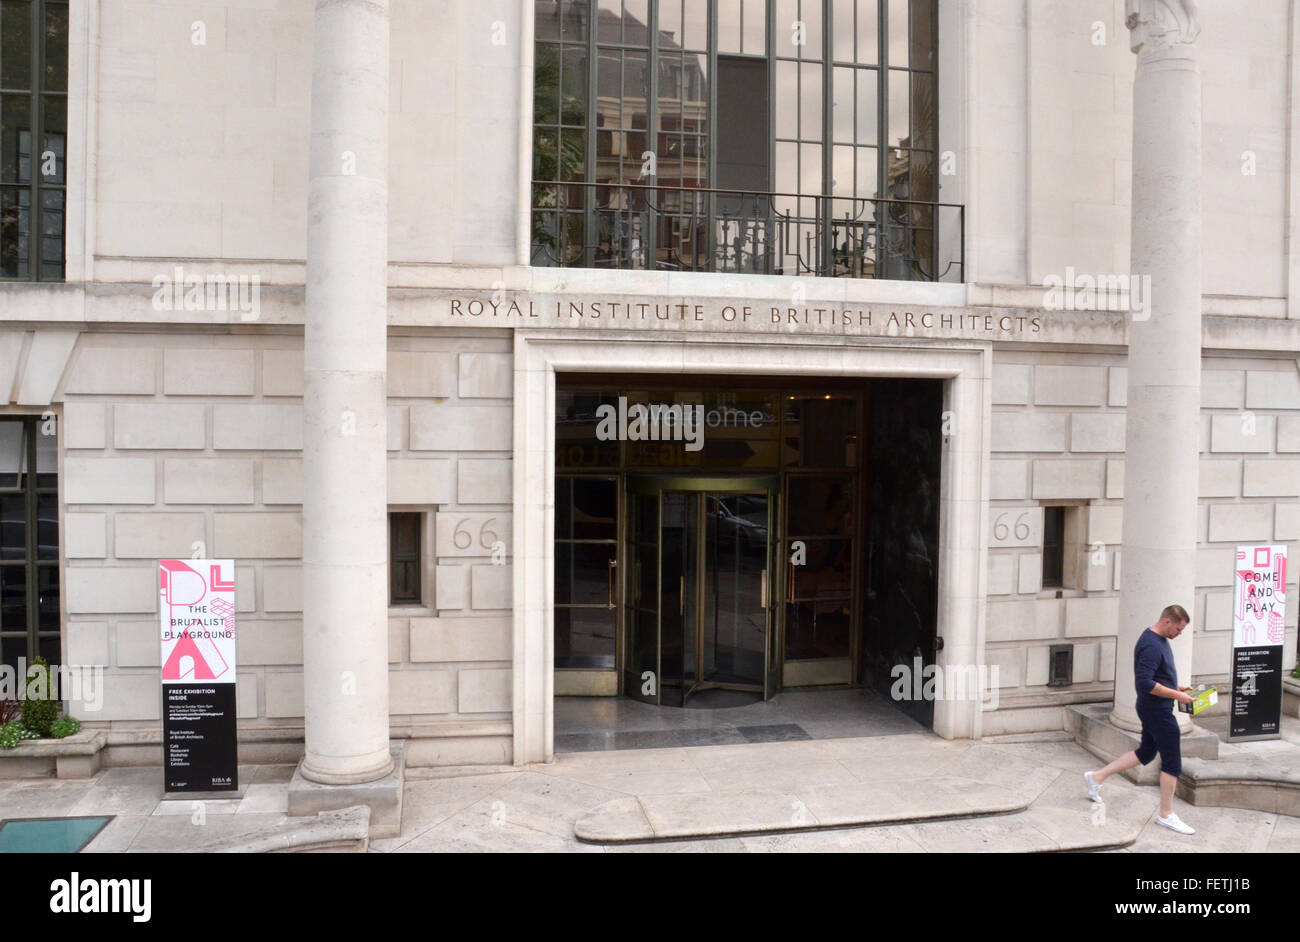 Londra - 6 agosto: Il Royal Institute of British Architects, la cui sede centrale di Londra è mostrato il 6 agosto 2015, ospita un Foto Stock